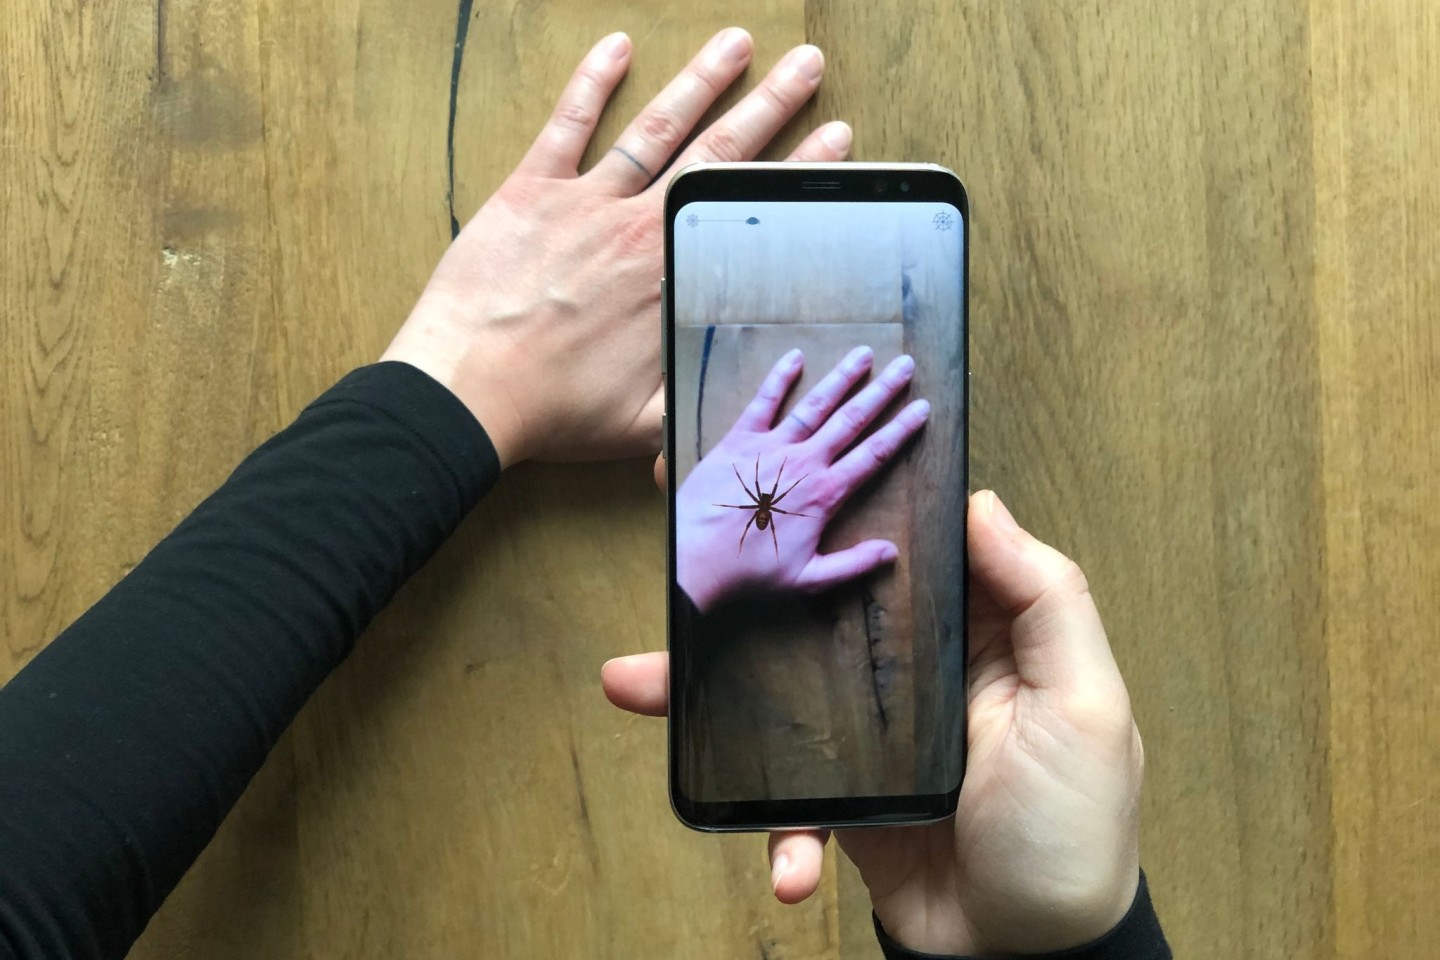 Eine App zeigt eine virtuelle Spinne auf einer Hand. Angst vor Spinnen macht vielen Leuten das Leben schwer - nun könnte das Handy Abhilfe schaffen.